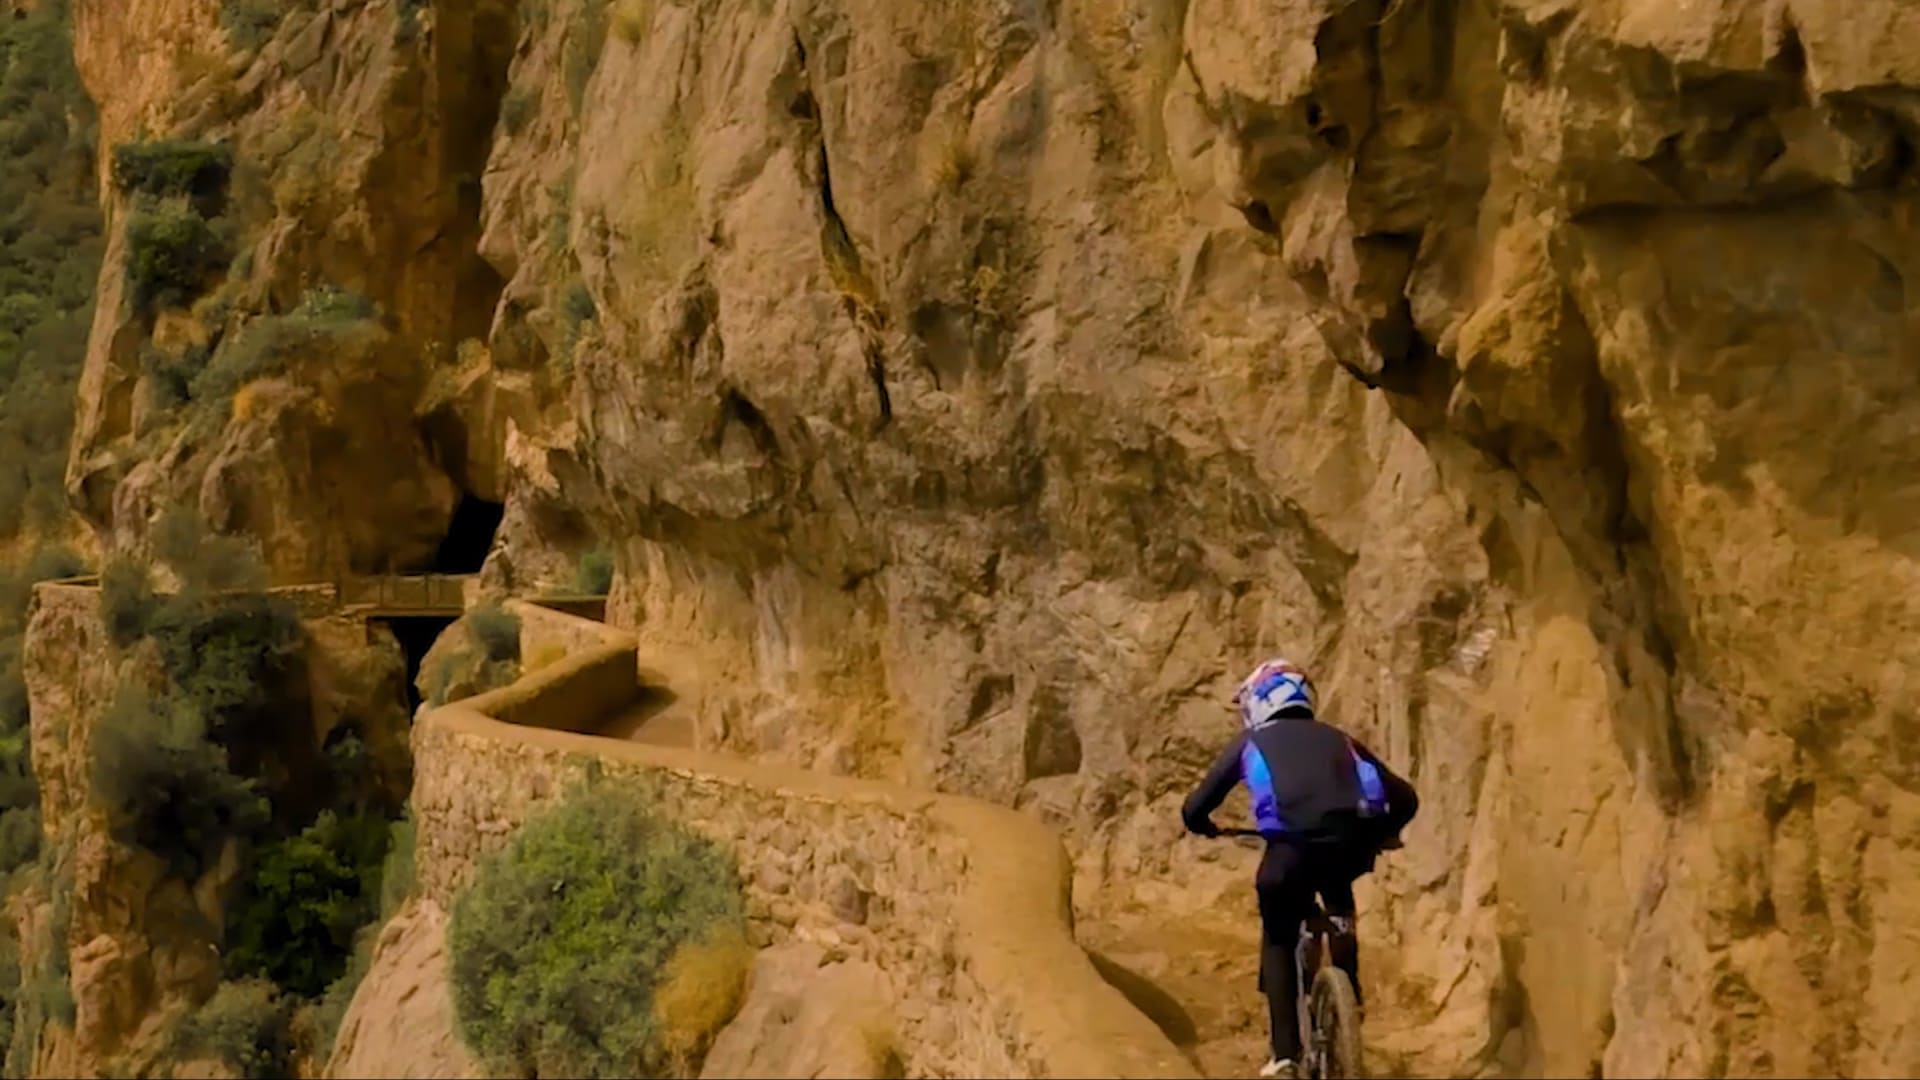 فيديو يحبس الأنفاس..مغامر ينطلق بدراجة عبر مسار جبلي ضيق في الجزائر